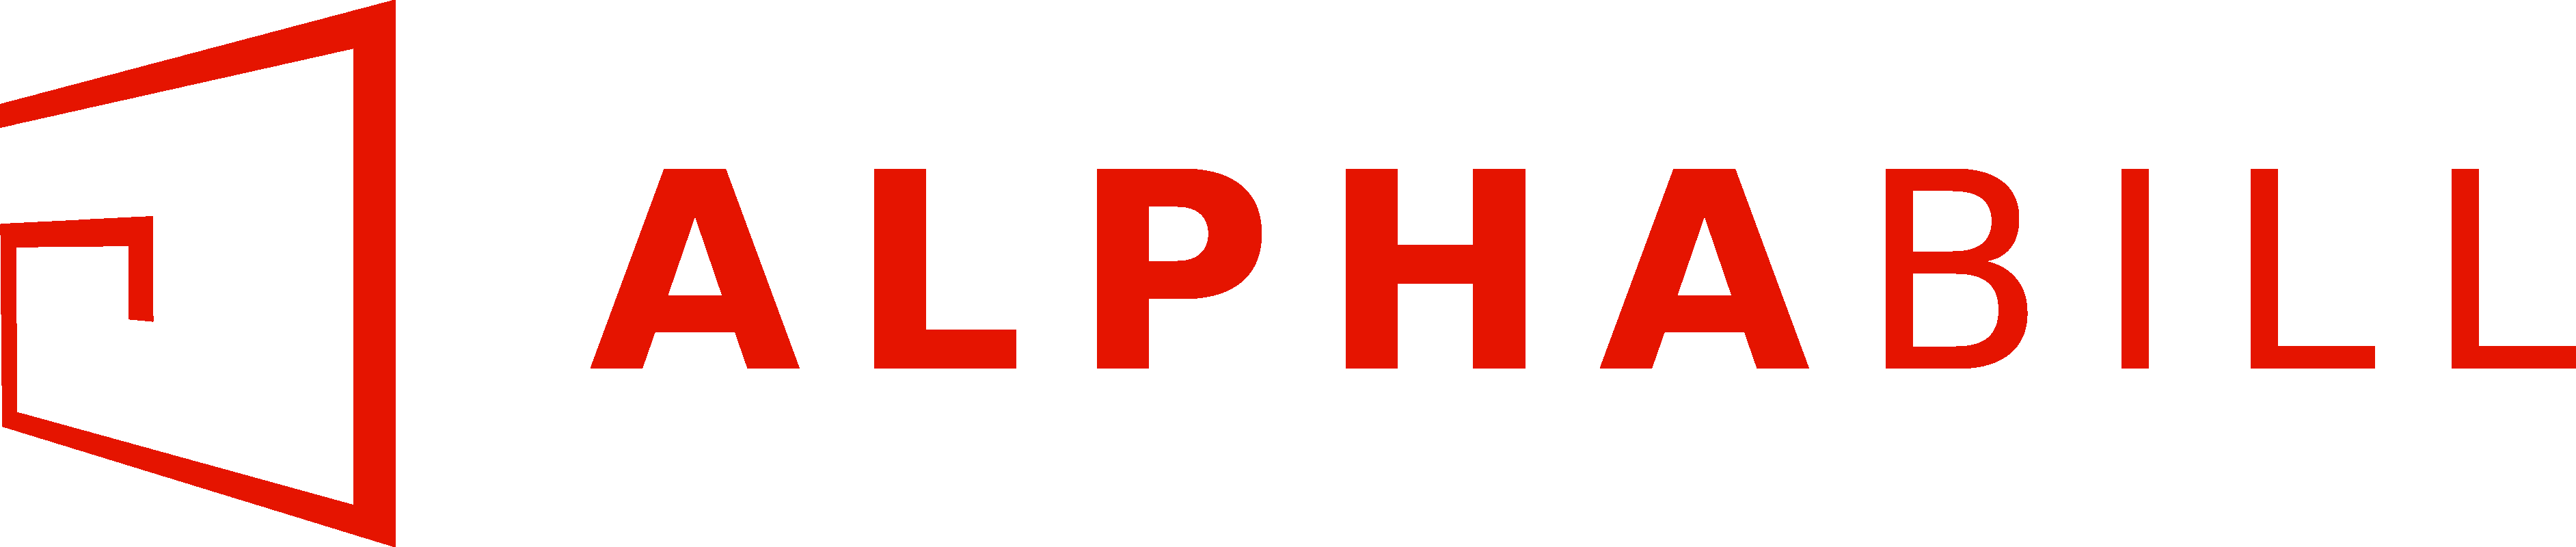 AlphaBill Logo